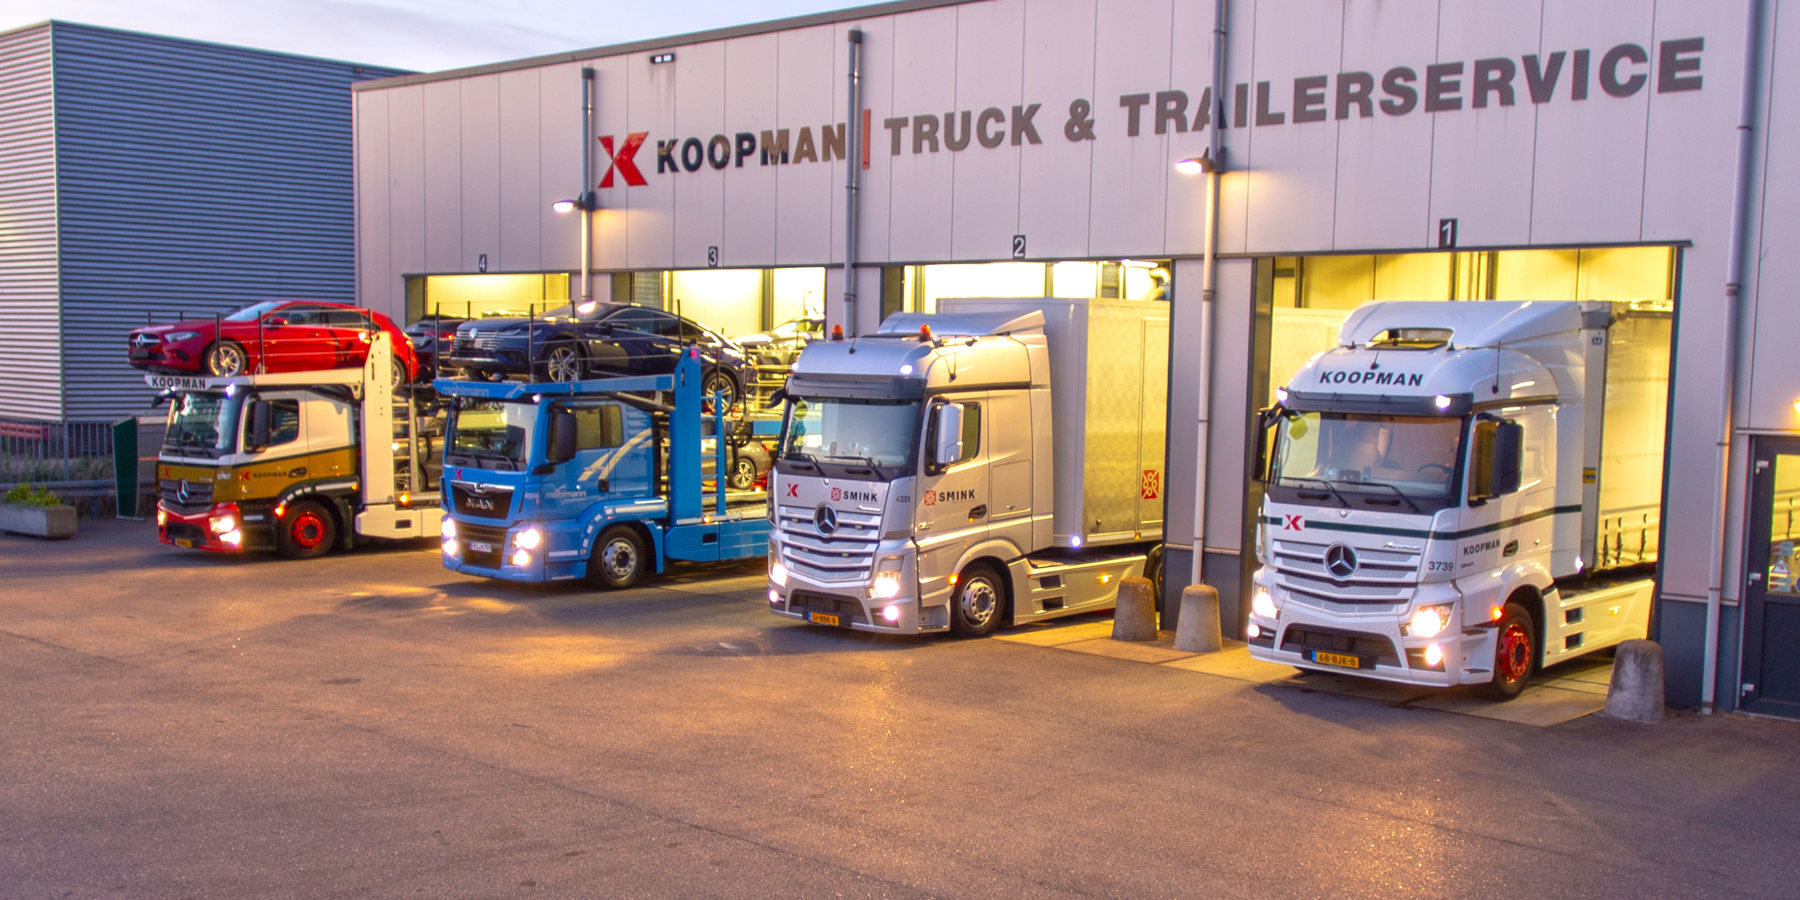 10 jaar Koopman Truck & Trailer Service vestiging Nijkerk